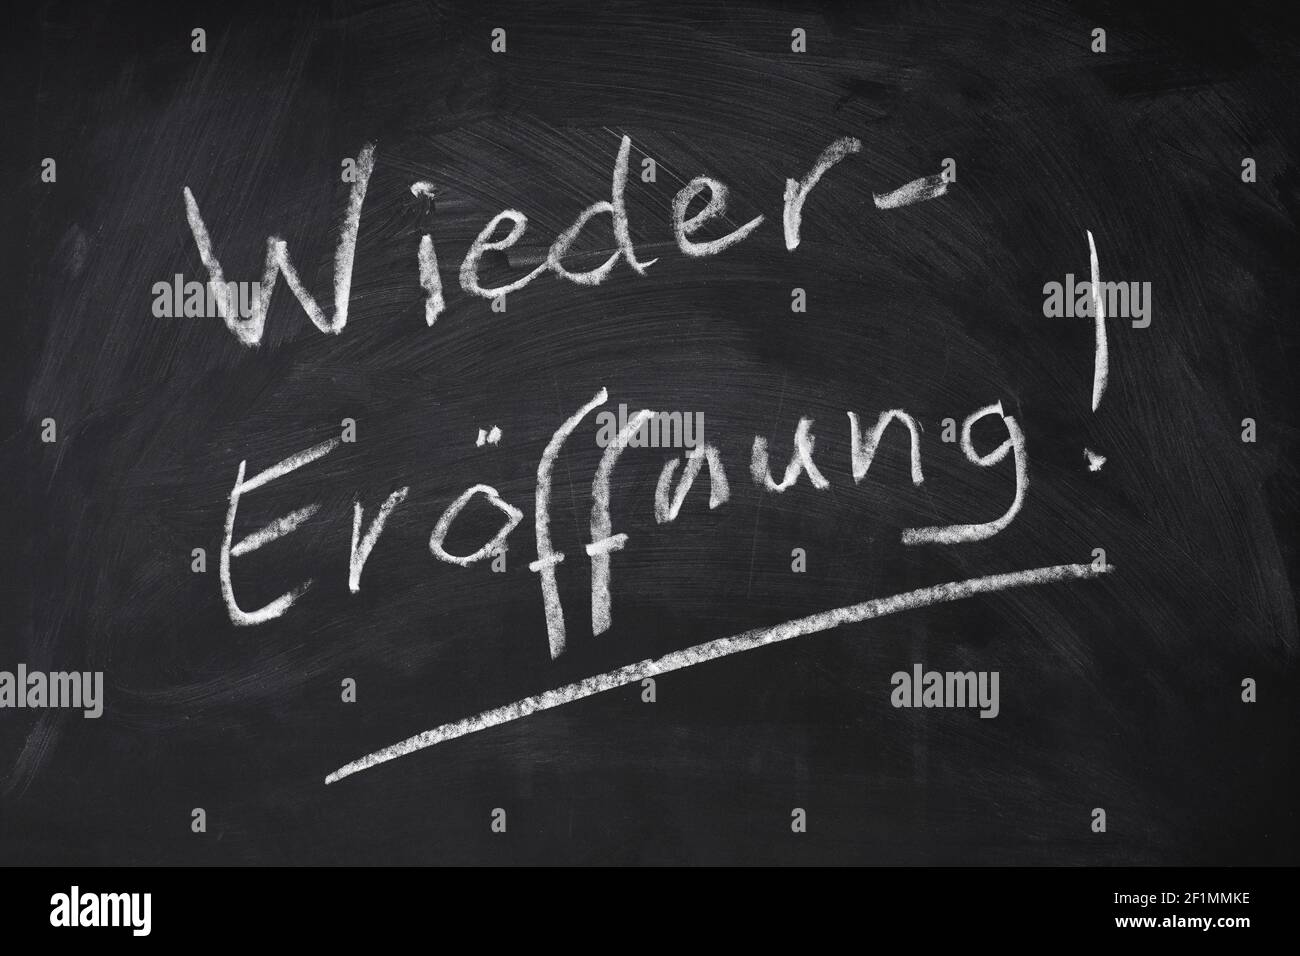 Wiedereröffnung significa riapertura in tedesco - testo scritto a mano sulla lavagna segno Foto Stock